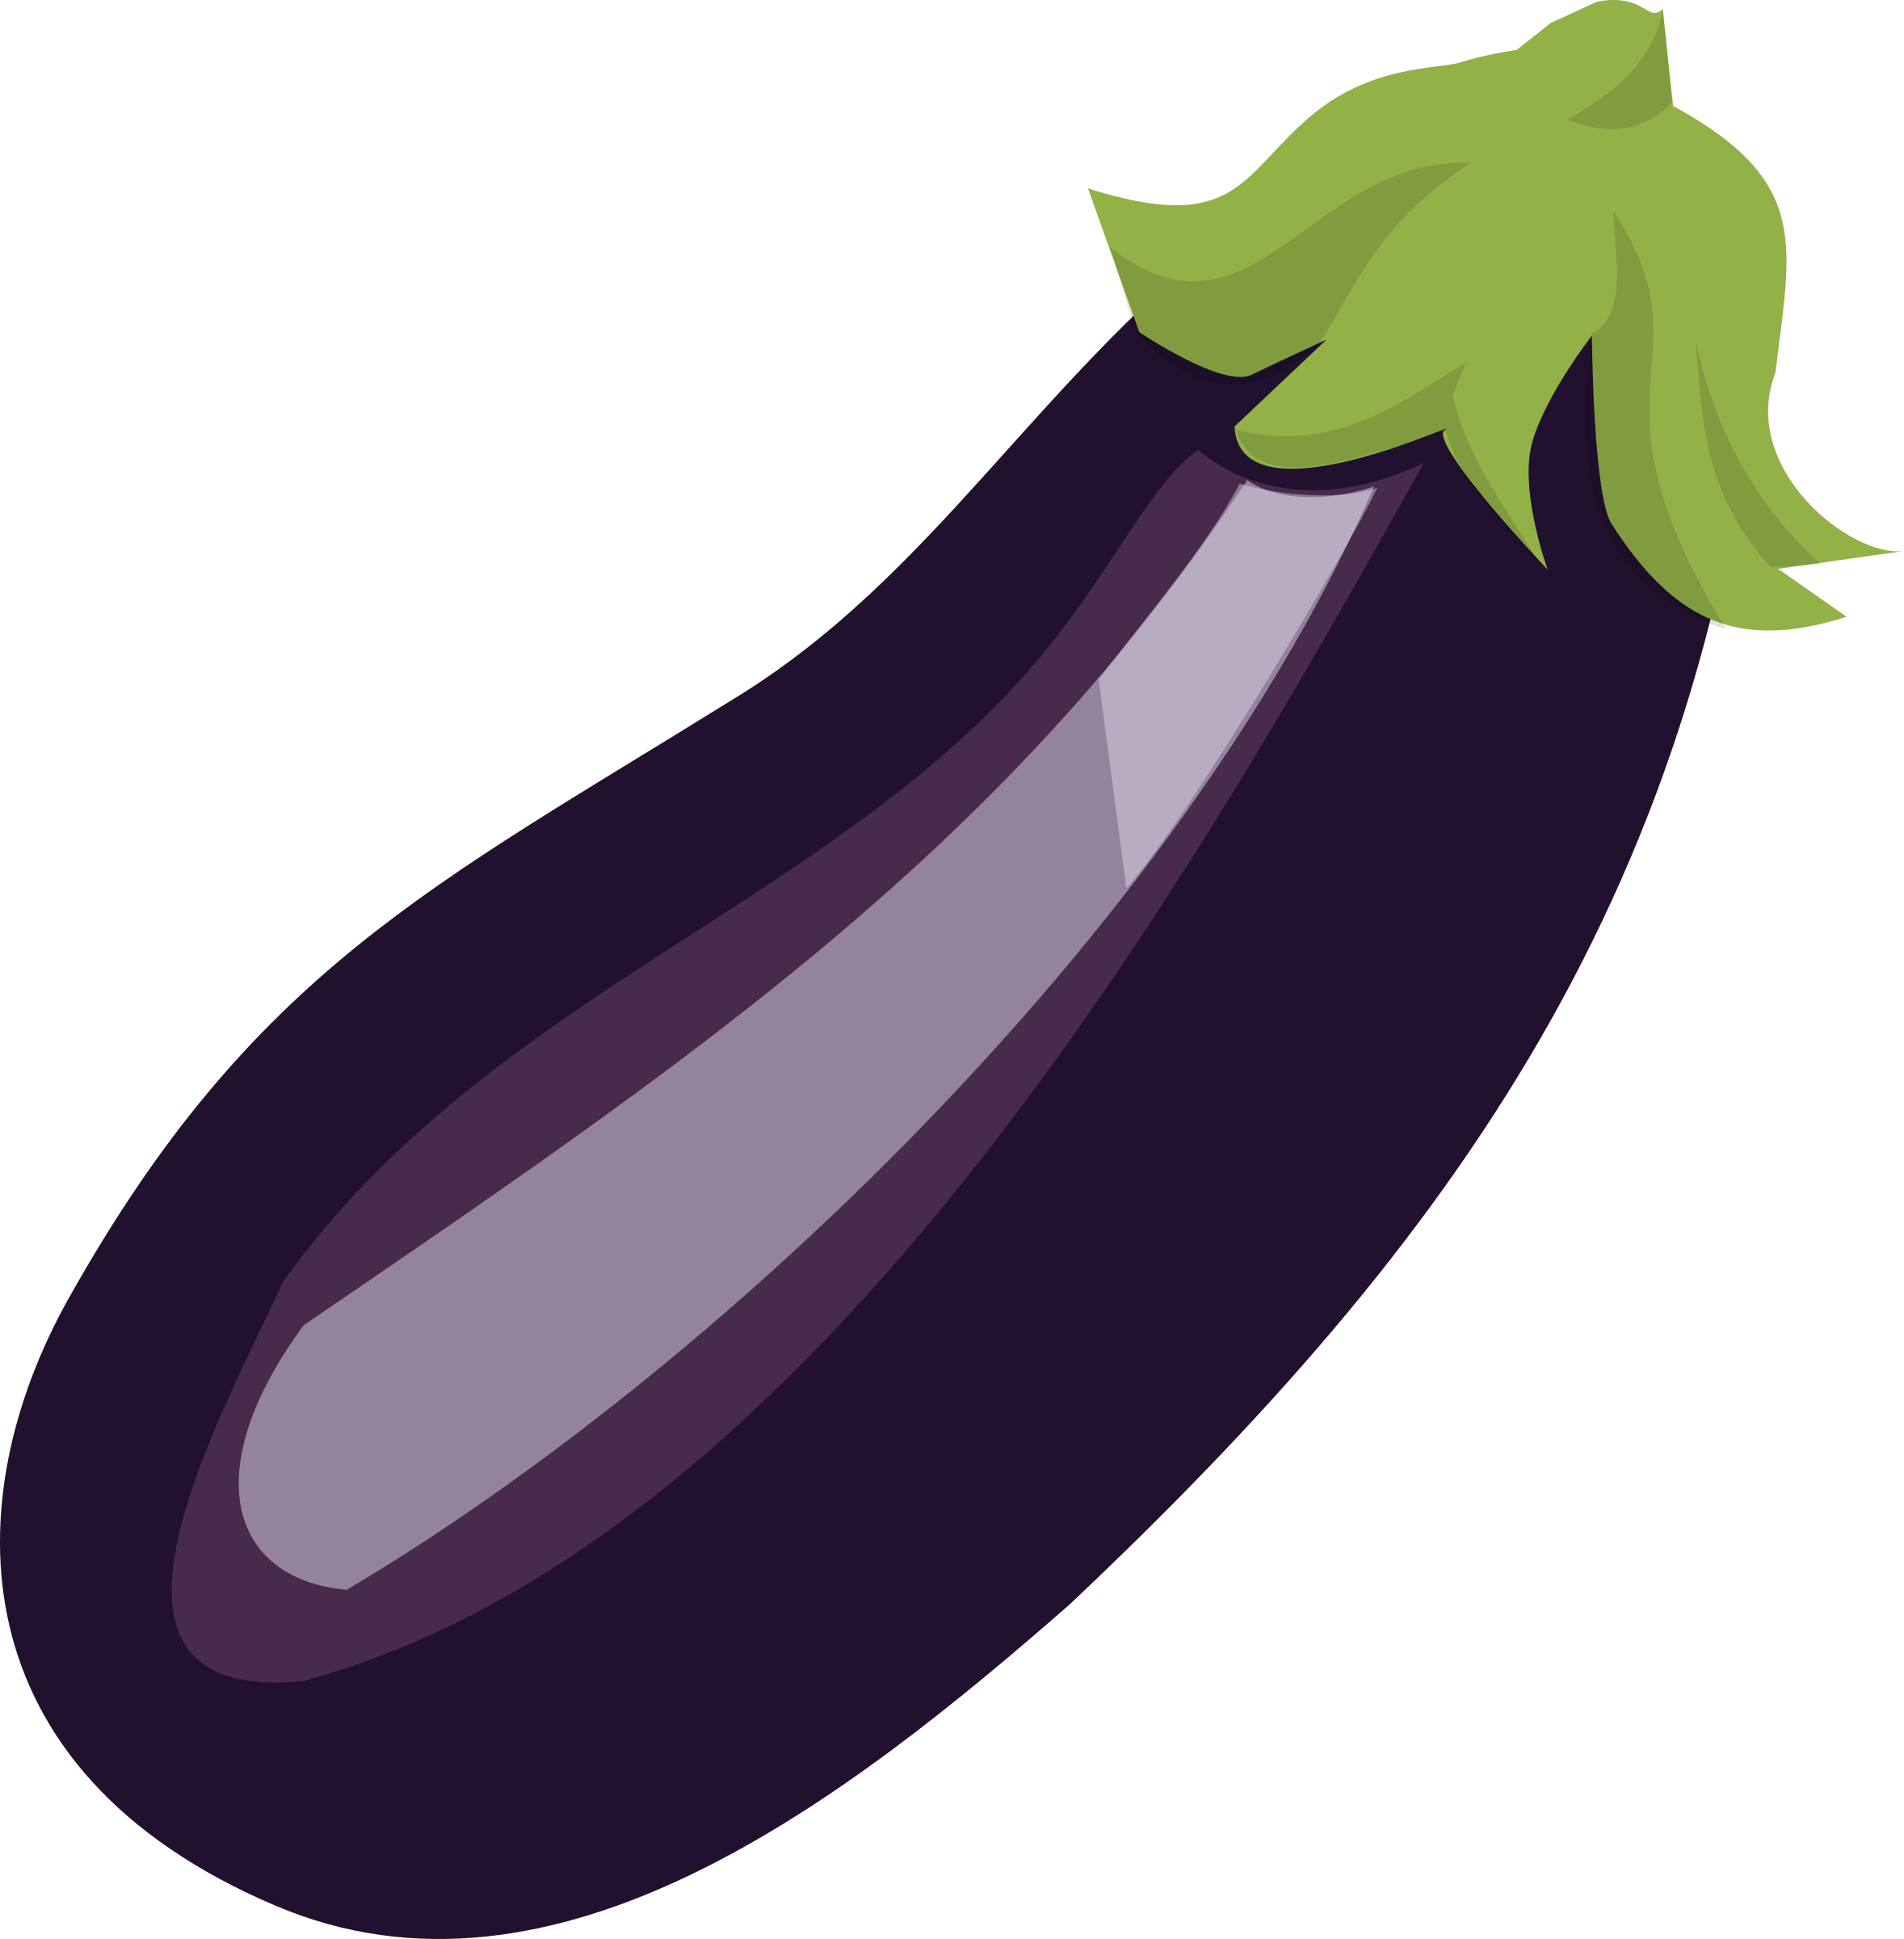 Single Brinjal Eggplant PNG File HD PNG Image